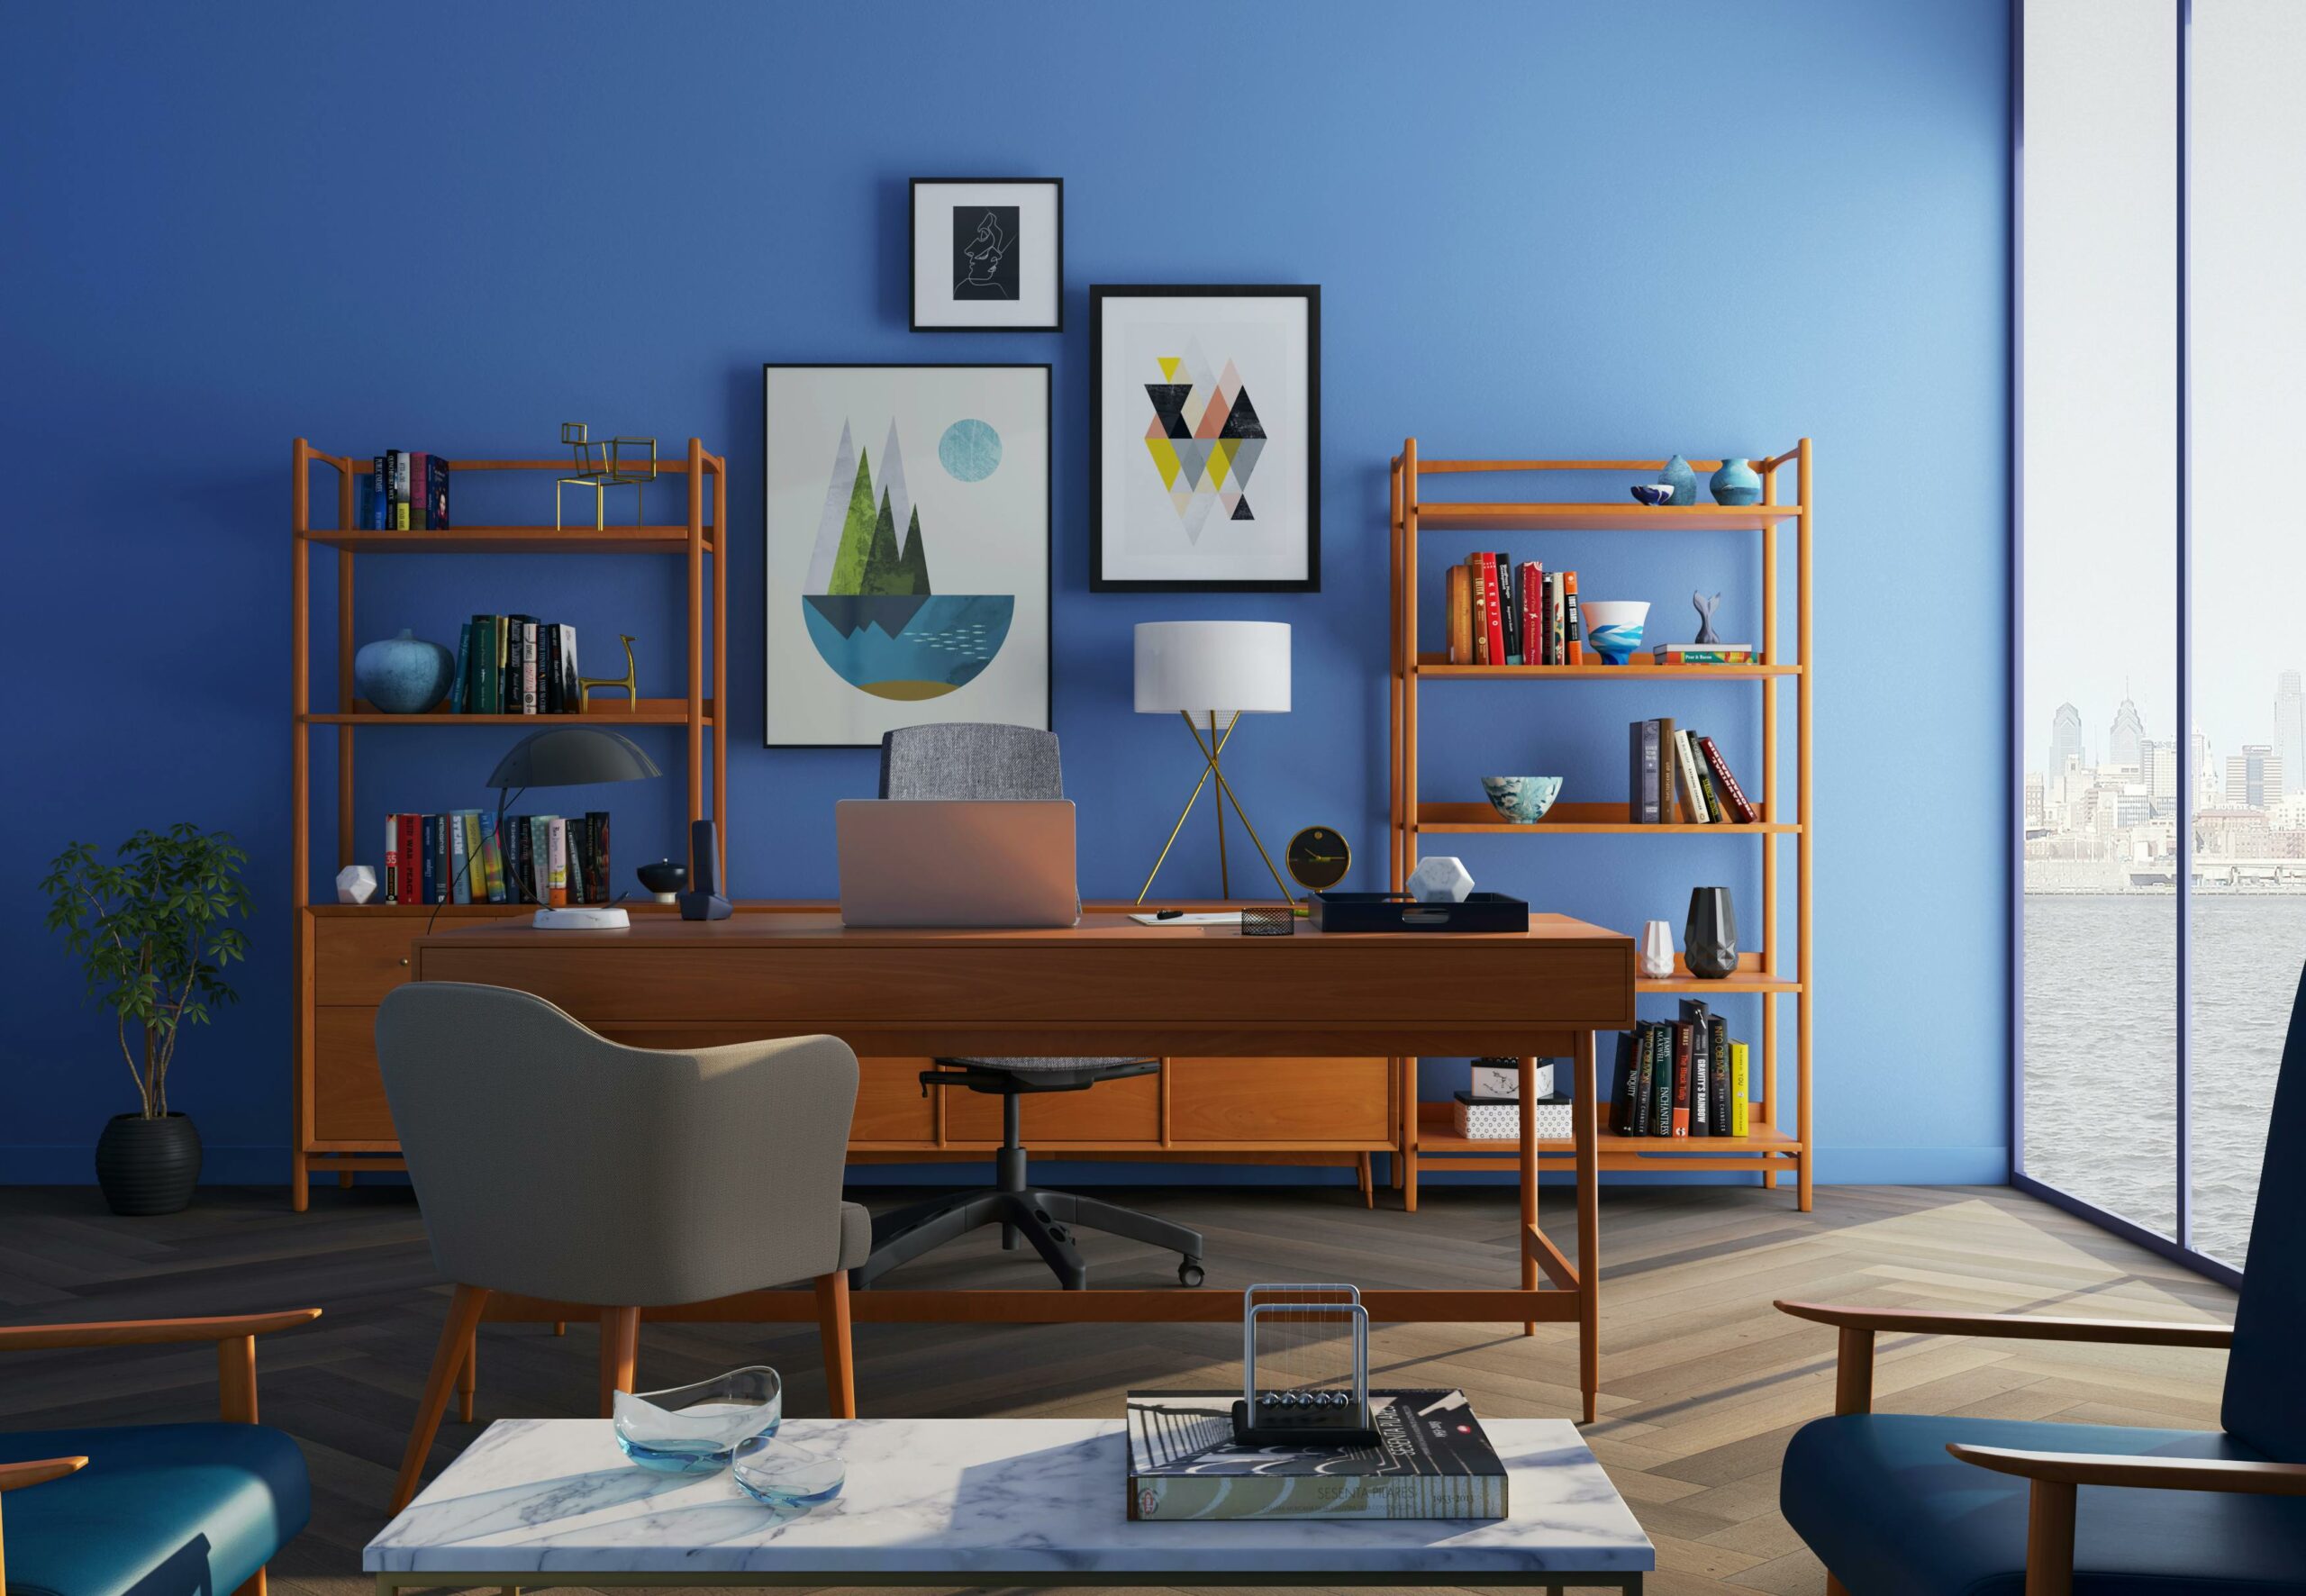 Un bureau élégant avec des étagères en bois, décoré de cadres et de livres, et une chaise confortable, évoquant un espace de travail intérieur moderne et organisé.